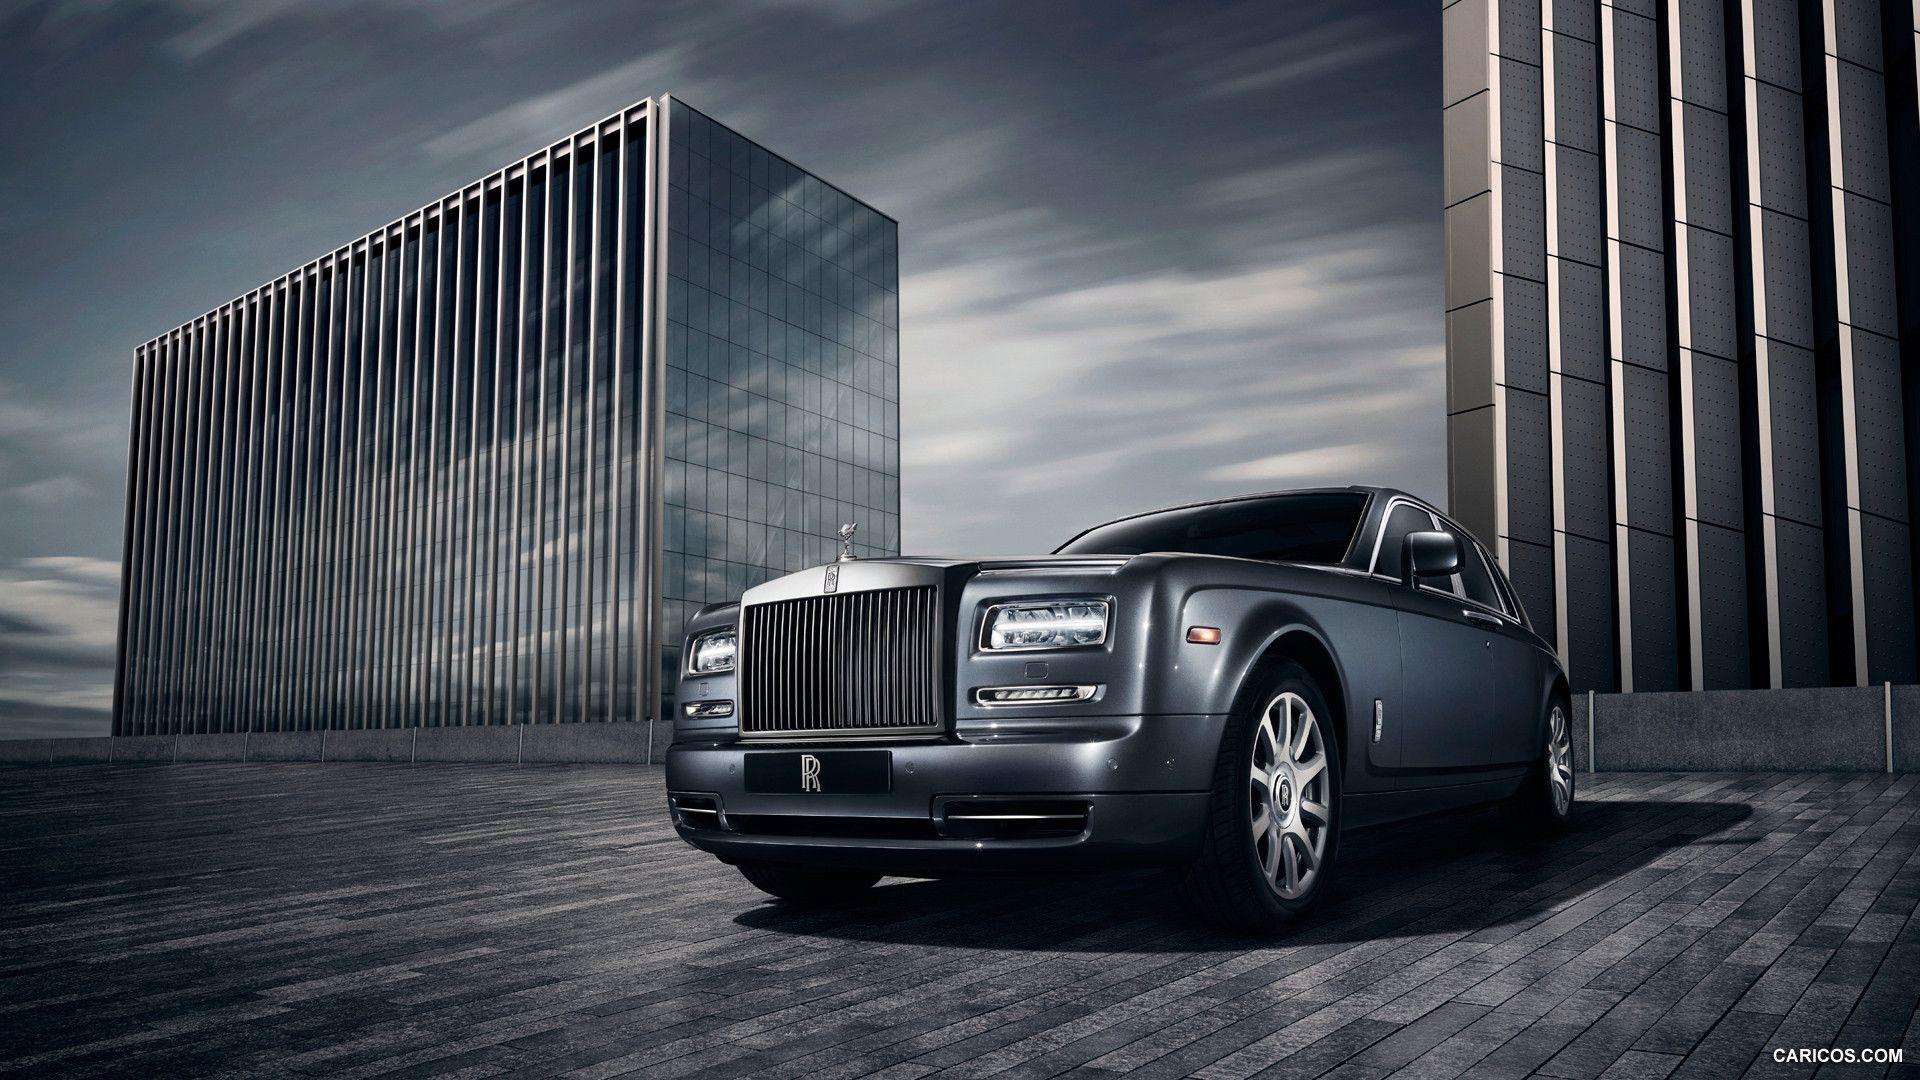 Rolls Royce Phantom Metropolitan Collection Picture # 130386. Rolls